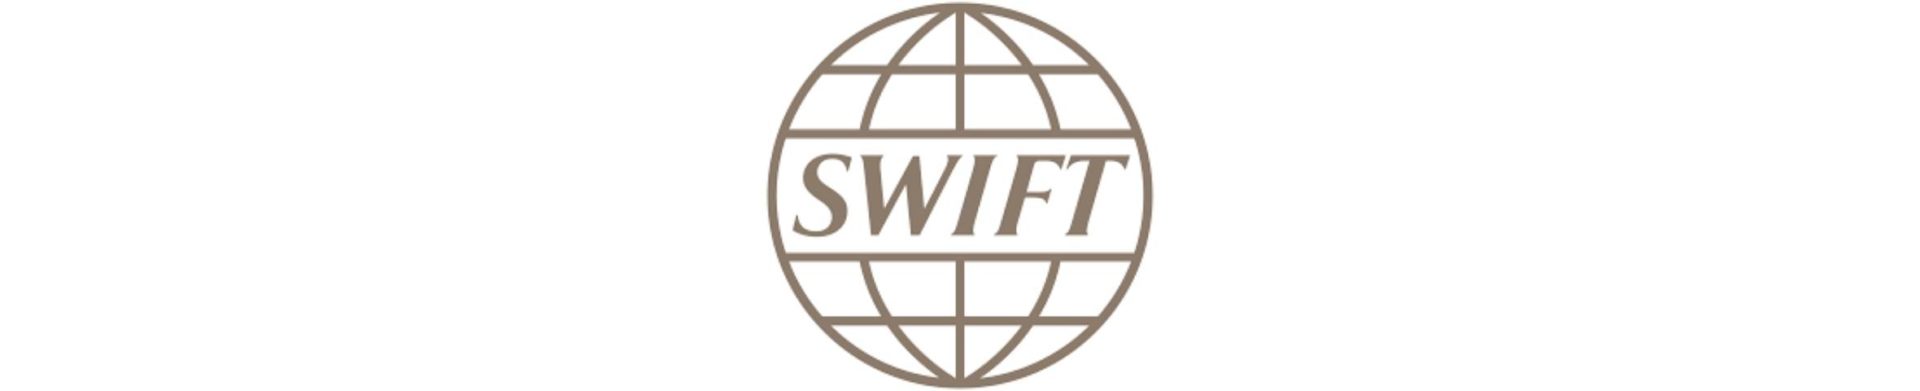 the SWIFT company logo